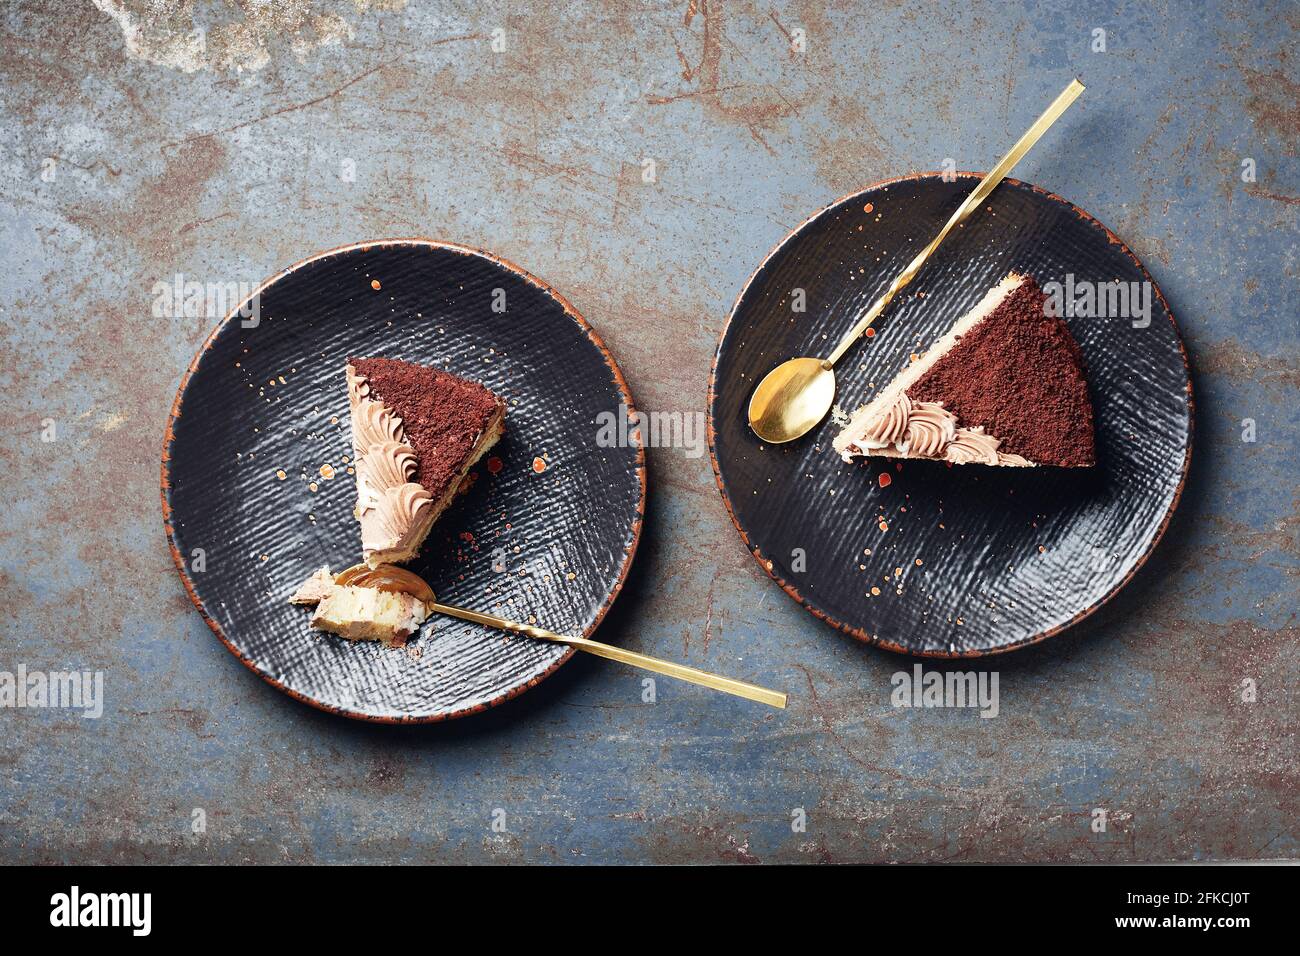 Zwei Stück Schokoladenkuchen auf schwarzen Tellern, Draufsicht. Stockfoto